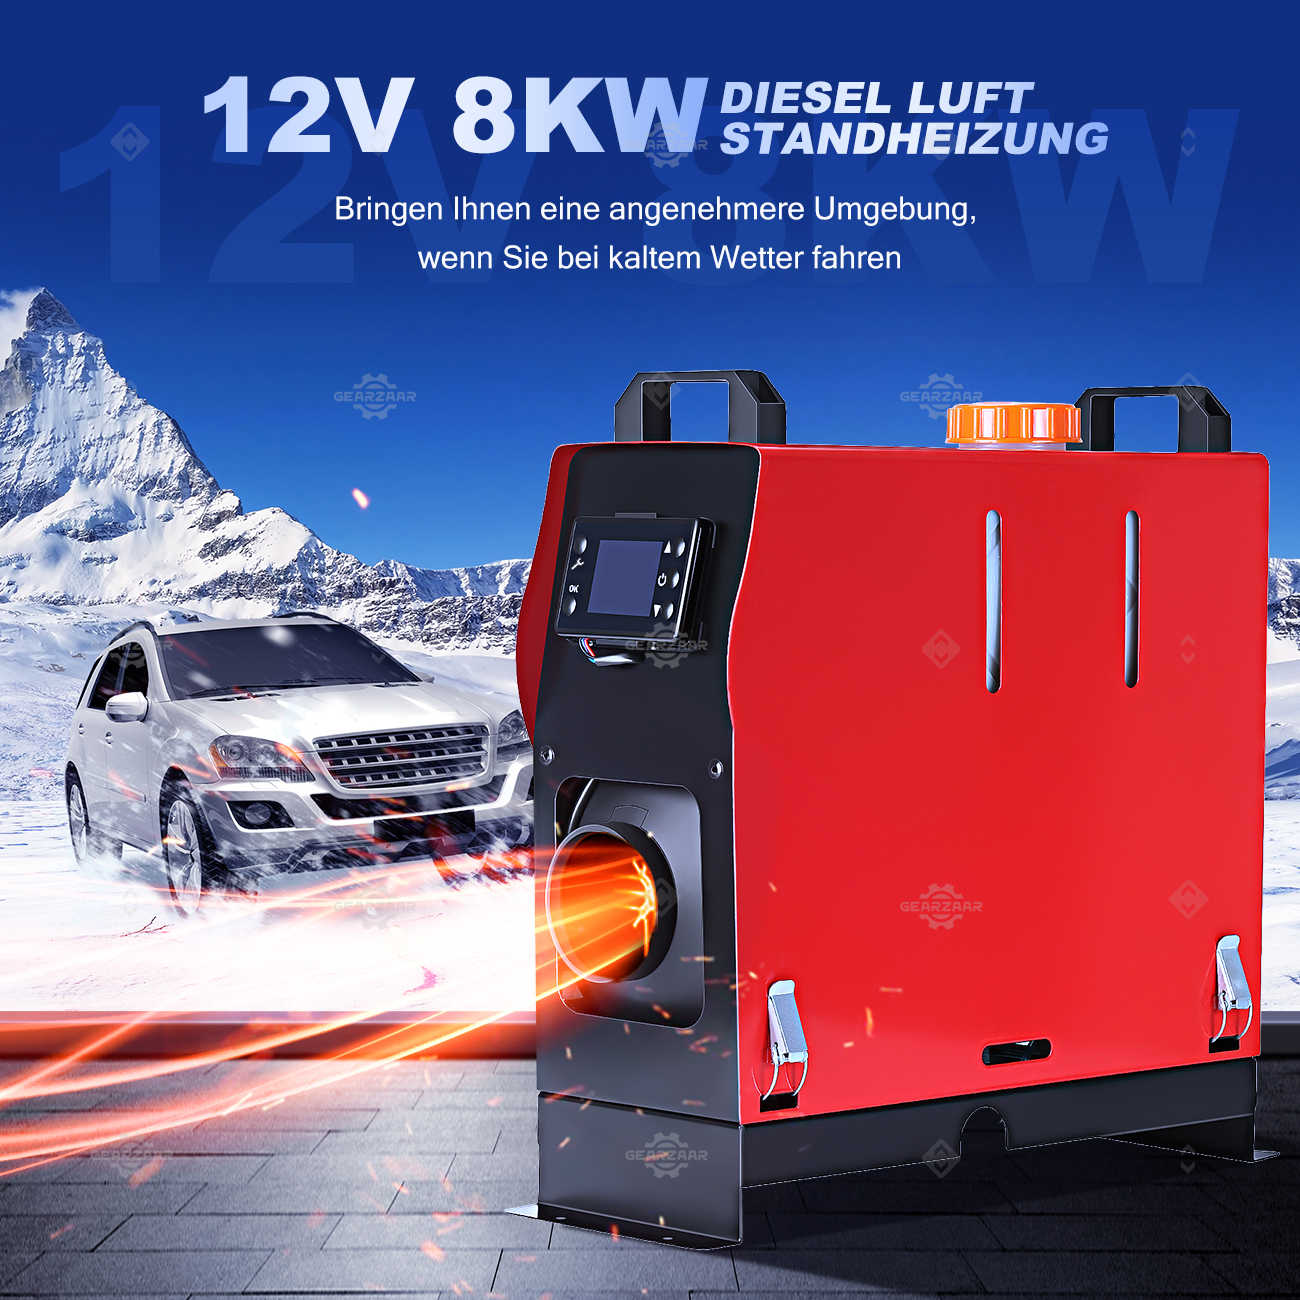 8 KW 12V Diesel Auto Heizung Standheizung Luftheizung Air Heater